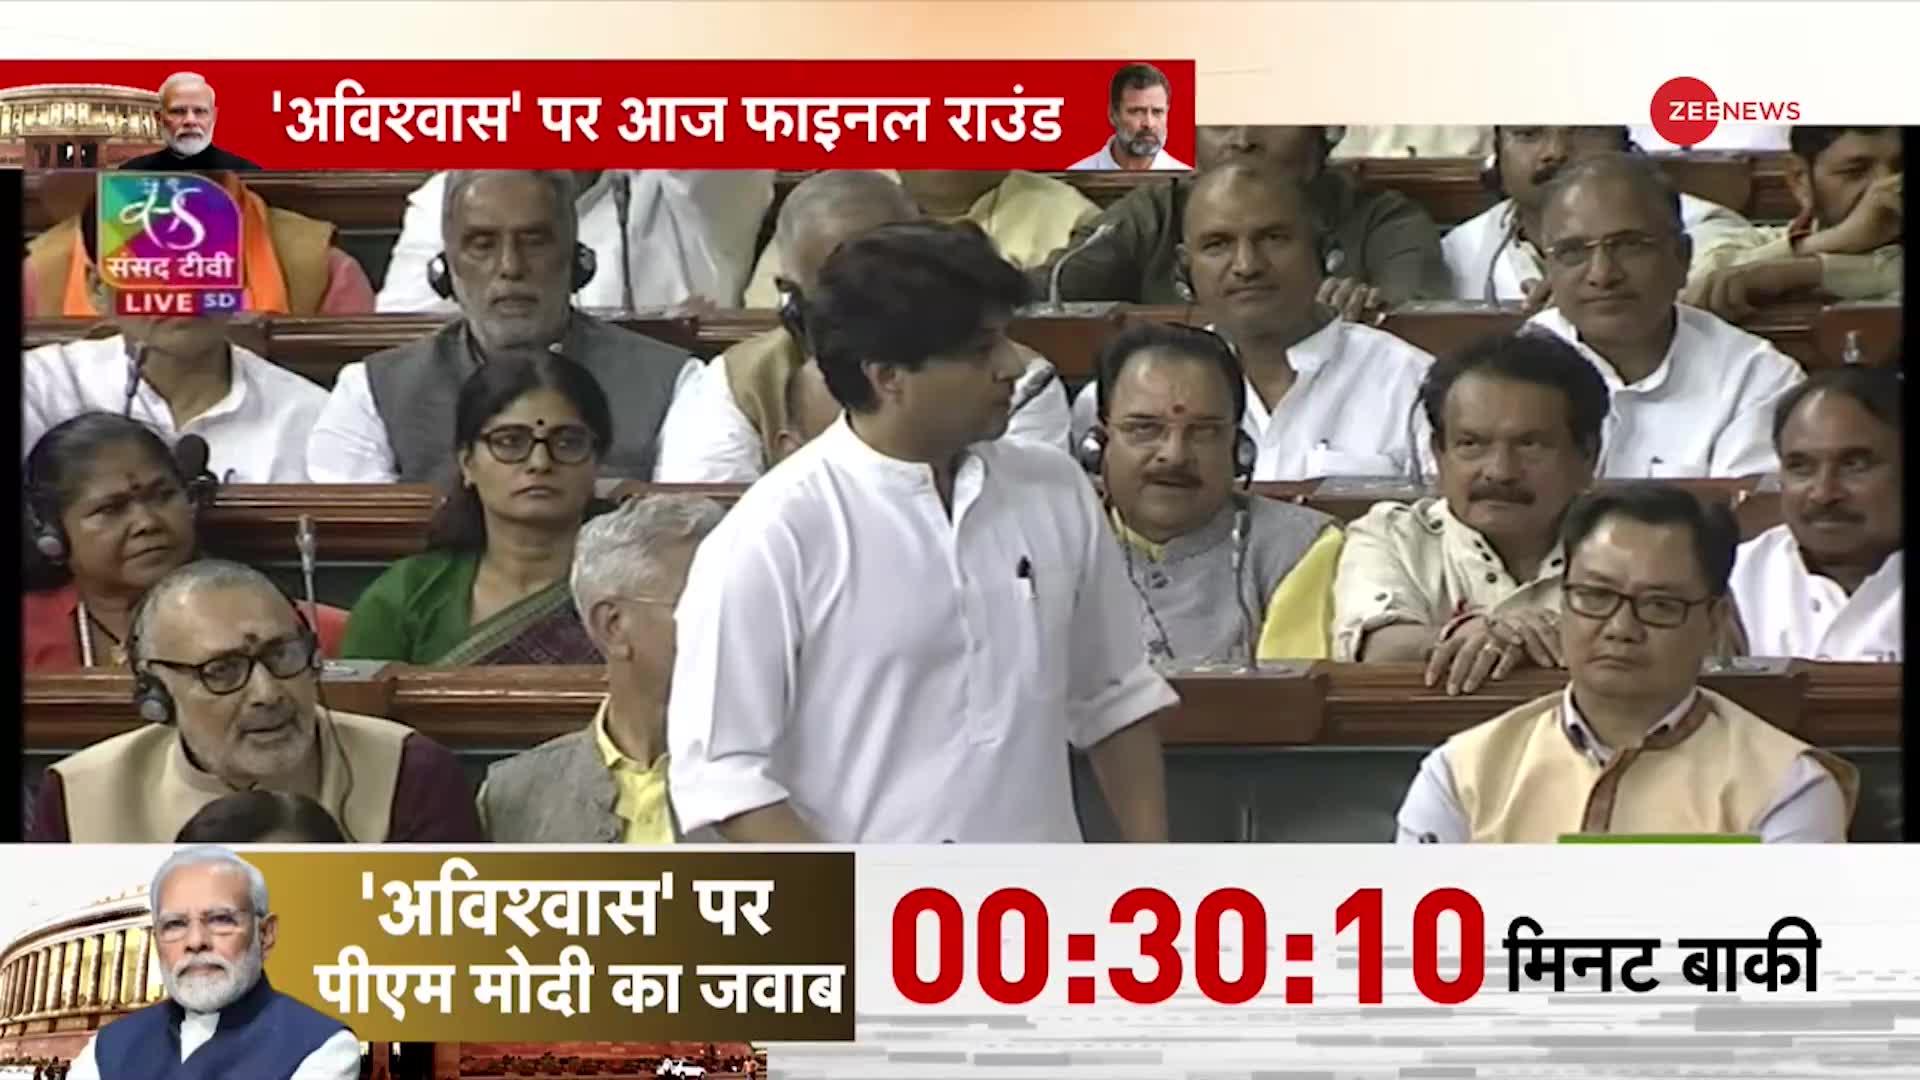 Jyotiraditya Scindia Angry On Rahul In Parliament Live: संसद में राहुल पर भड़के सिंधिया